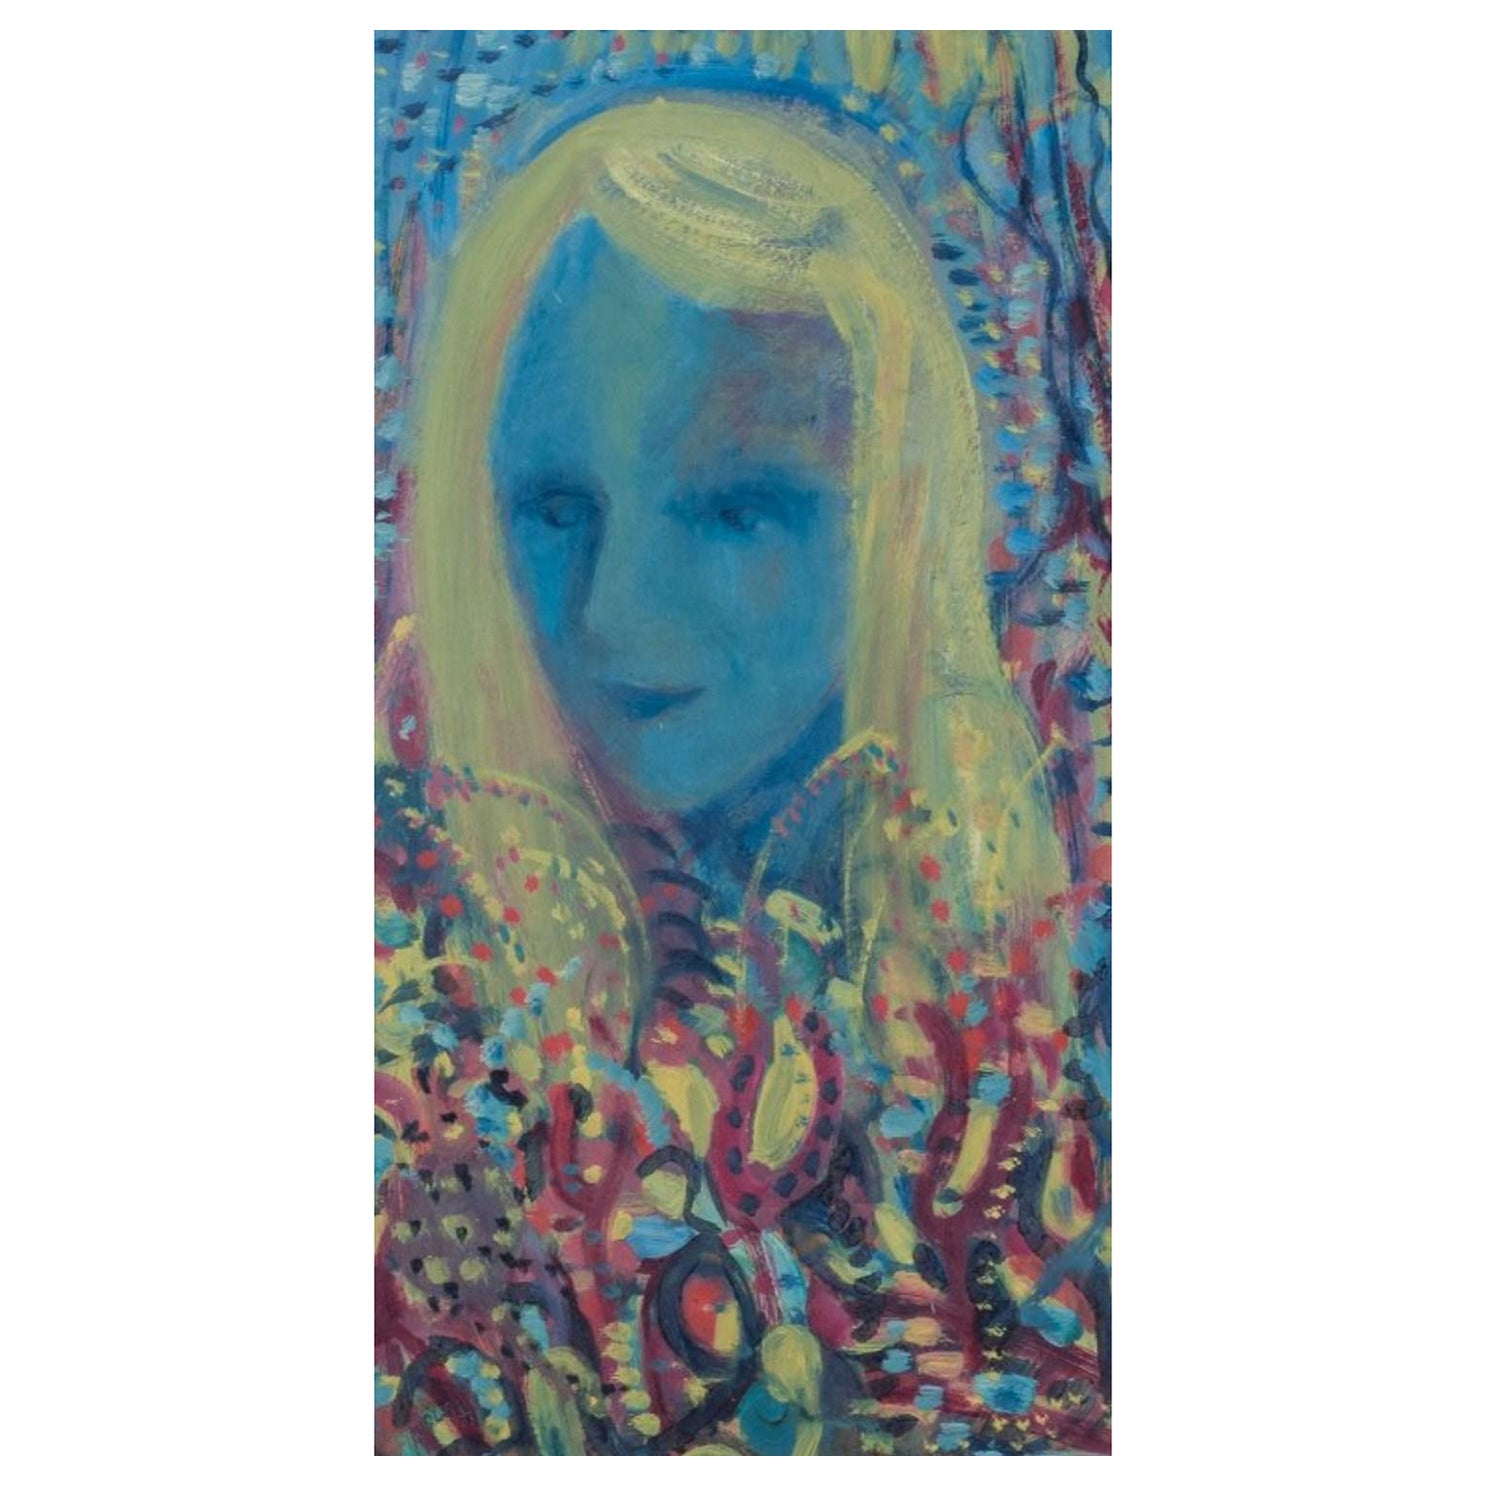 Lennart Pilotti (1912-1981), schwedischer Künstler. Öl auf Karton. Porträt einer Frau